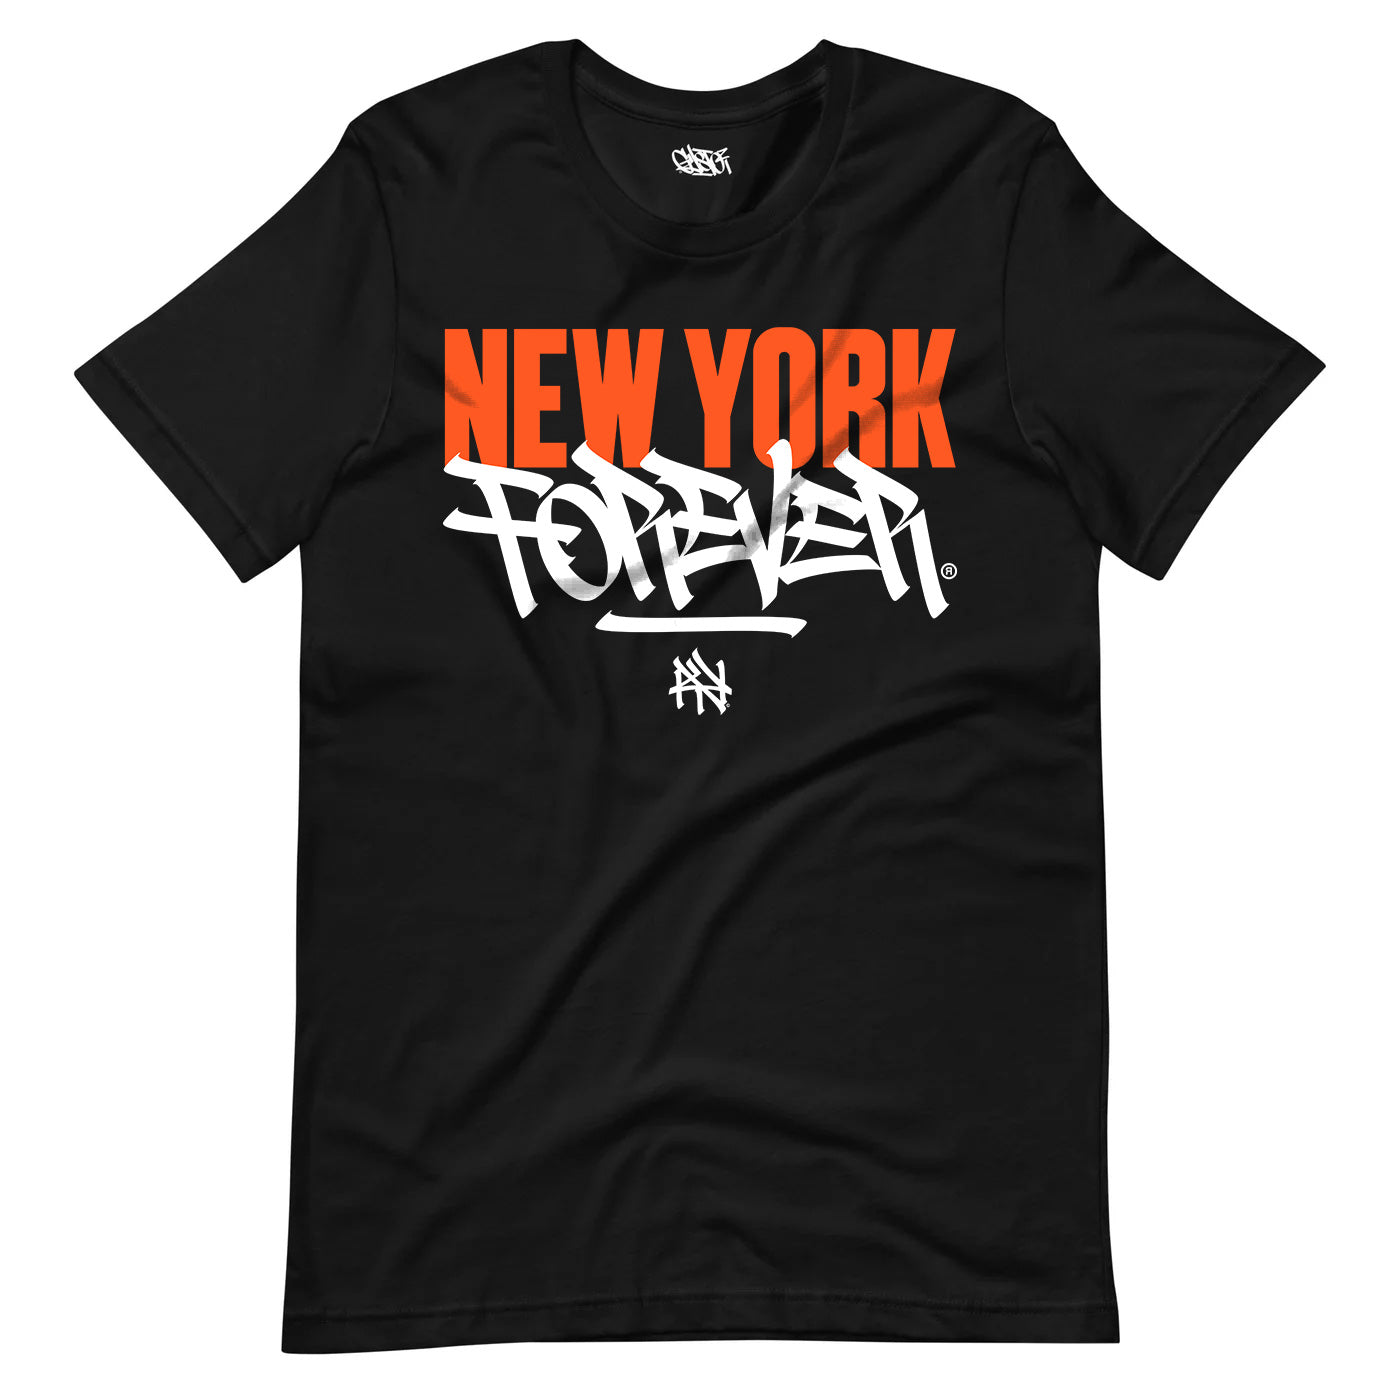 New York Forever, Knicks Edition - Unisex T-Shirt